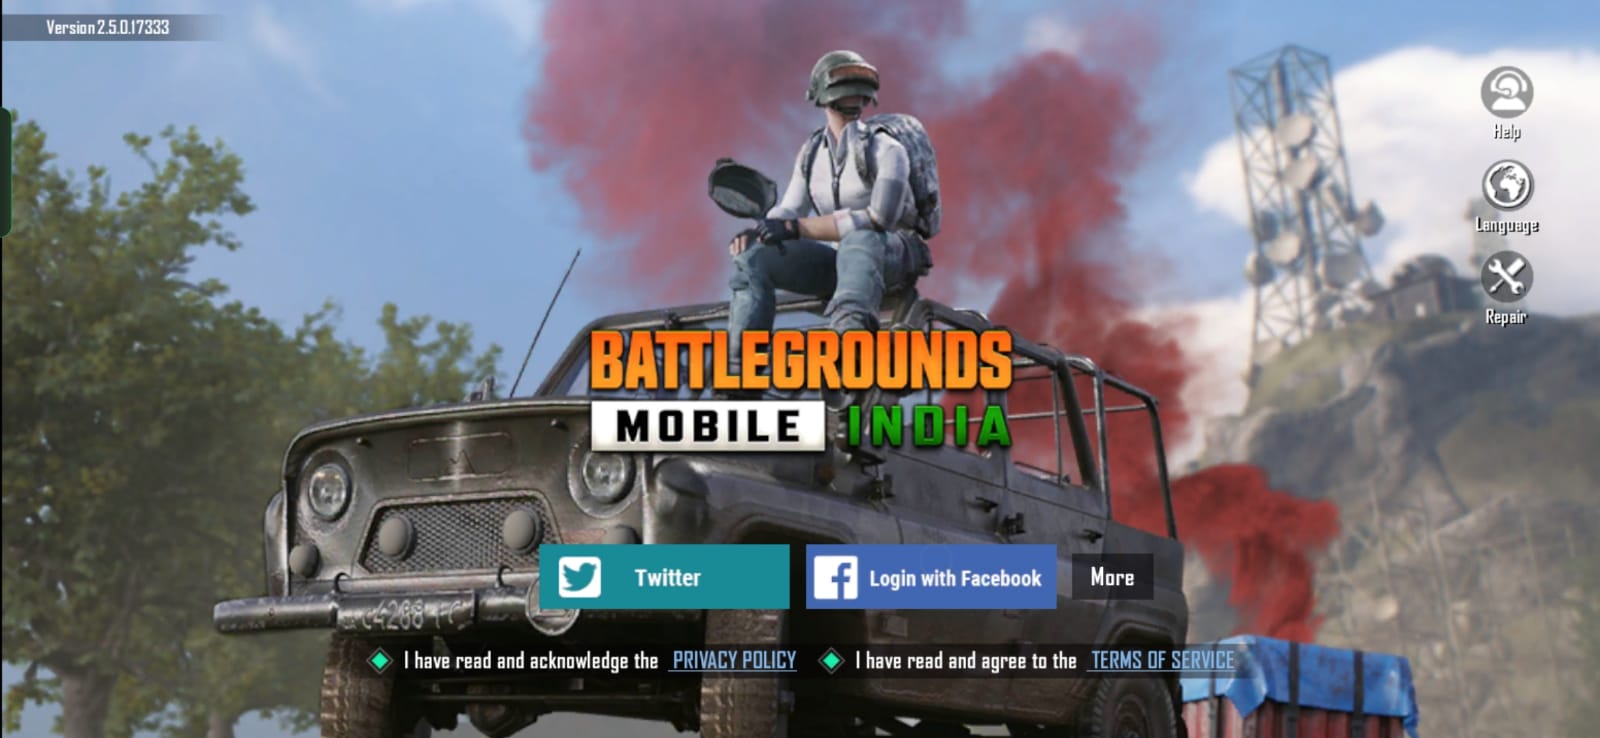 Khắc phục sự cố thông báo BGMI: Cách khắc phục sự cố thông báo trong trò chơi trong Battlegrounds Mobile Ấn Độ